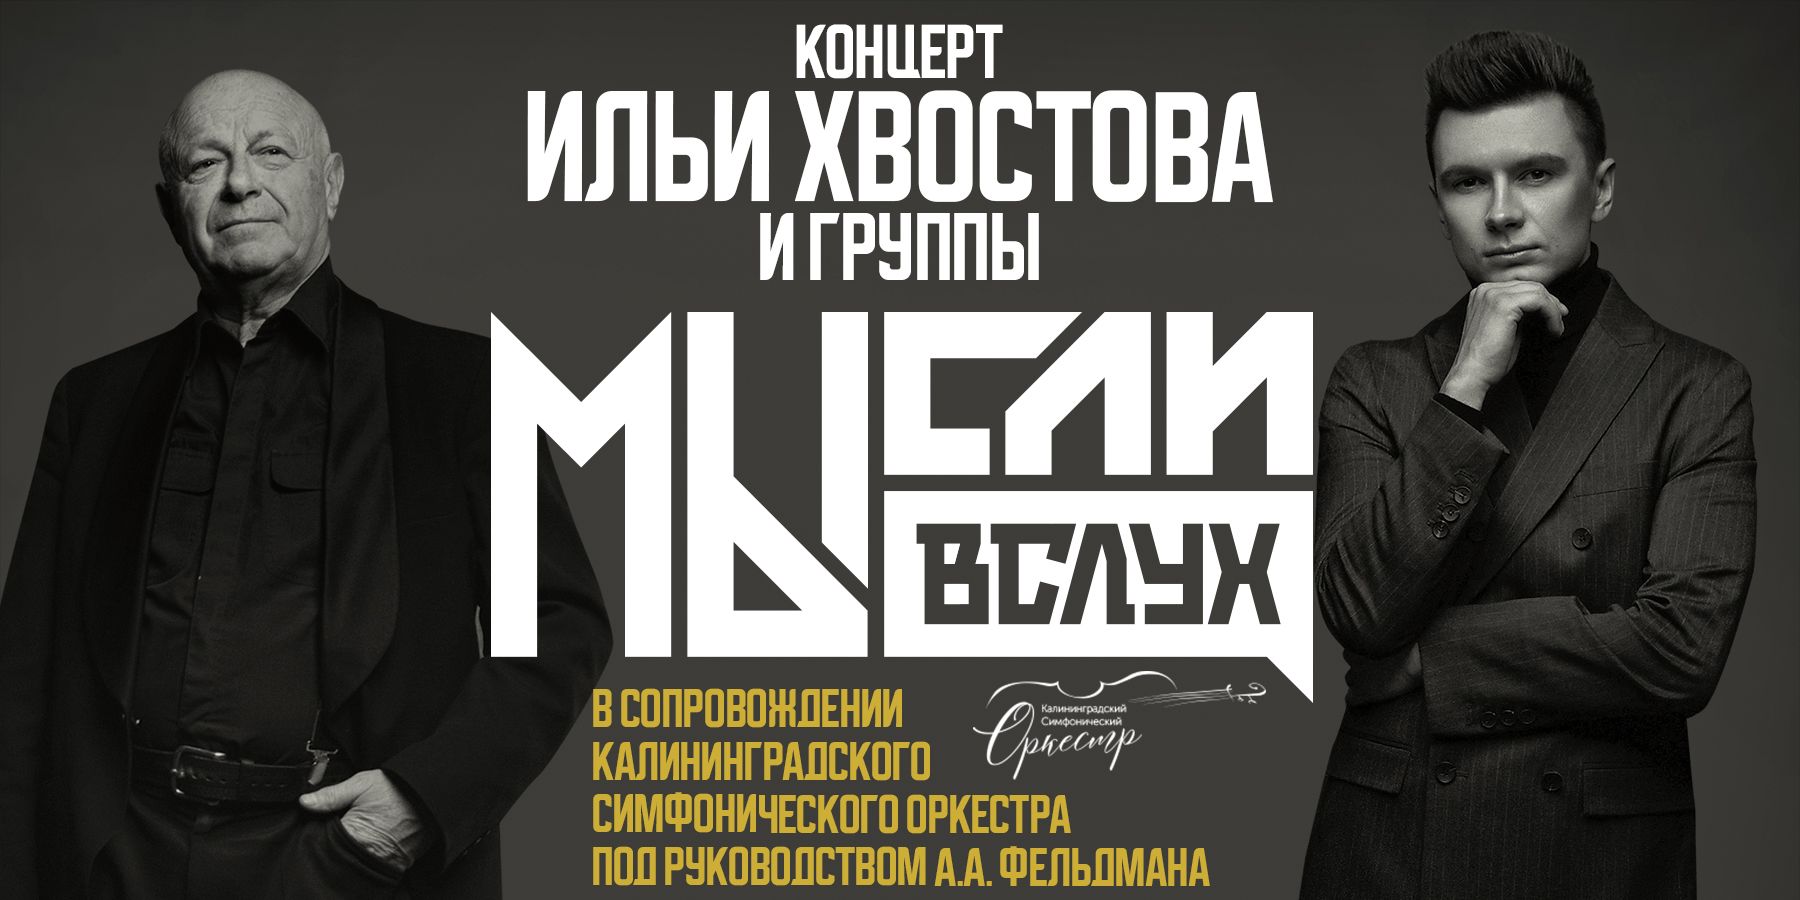 Илья Хвостов, Аркадий Фельдман и группа «МЫсли вслух» в сопровождении Калининградского симфонического оркестра 2021